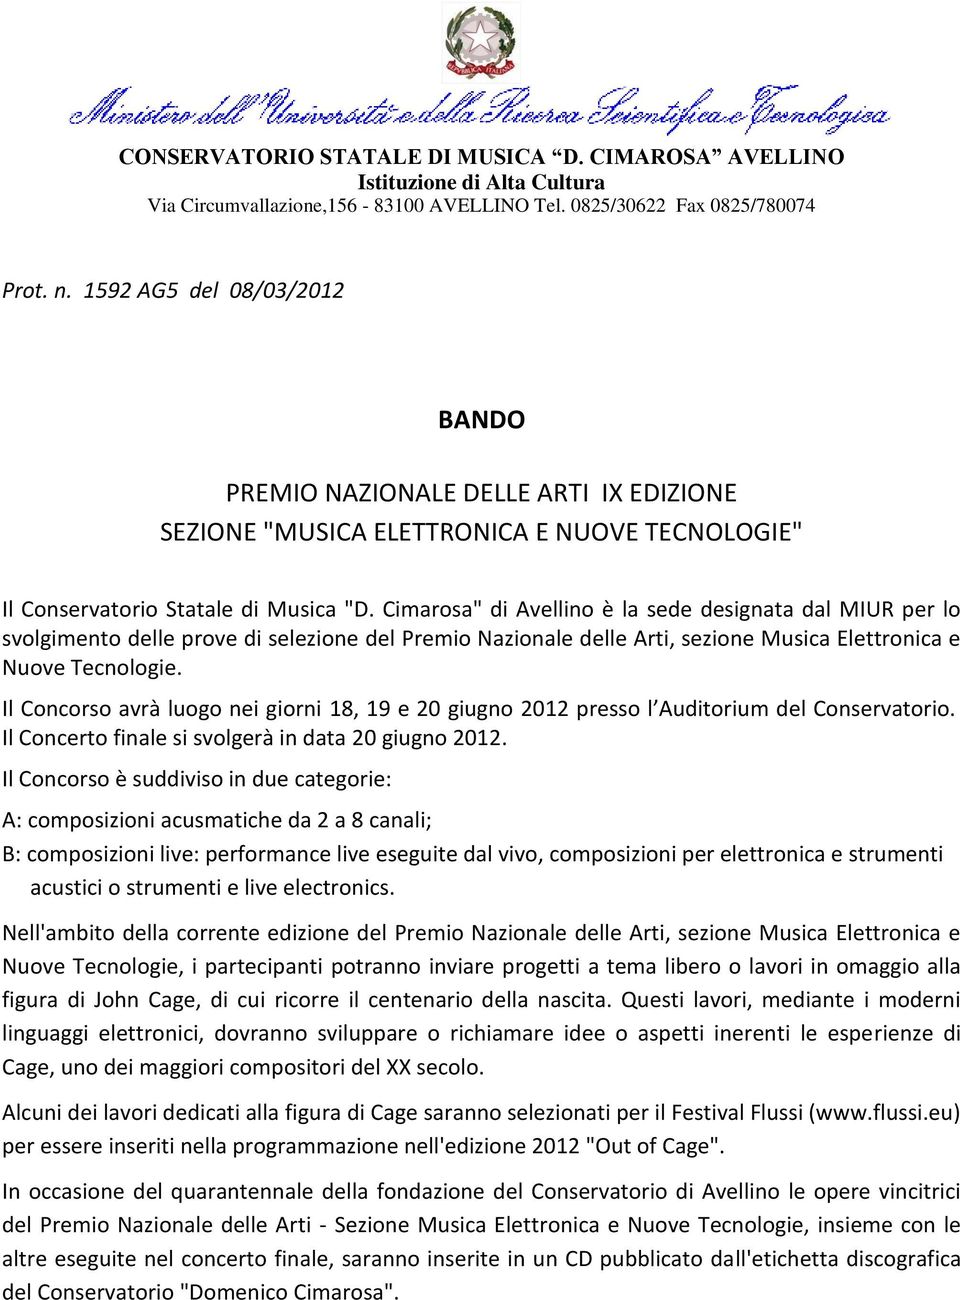 Cimarosa" di Avellino è la sede designata dal MIUR per lo svolgimento delle prove di selezione del Premio Nazionale delle Arti, sezione Musica Elettronica e Nuove Tecnologie.